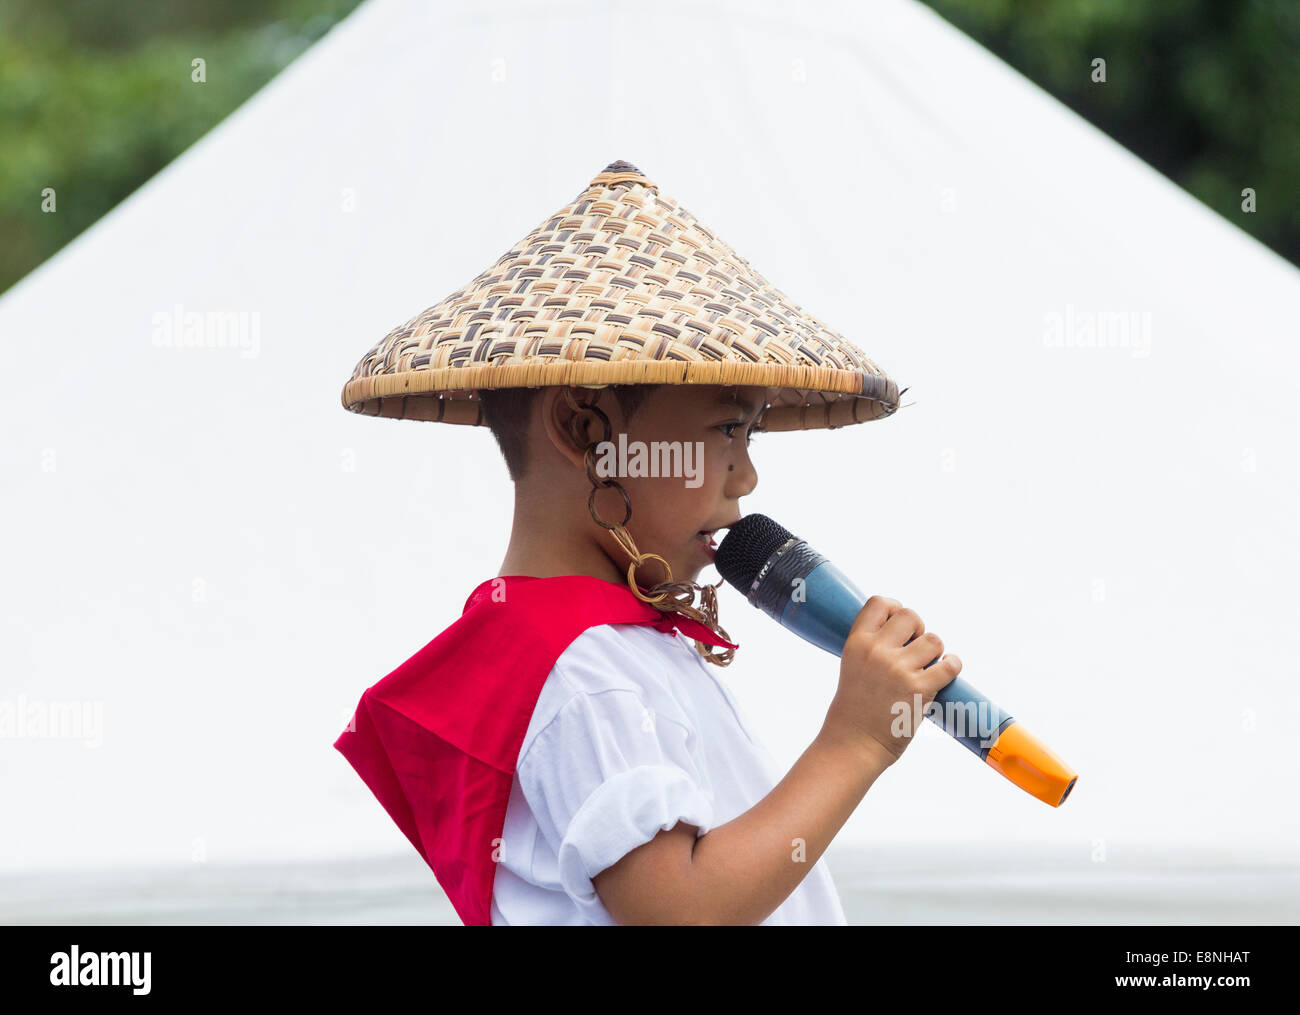 de Filipinas en traje tradicional vistiendo sombrero hecho de carrizos cantando en encuentro intercultural en España Fotografía de stock Alamy